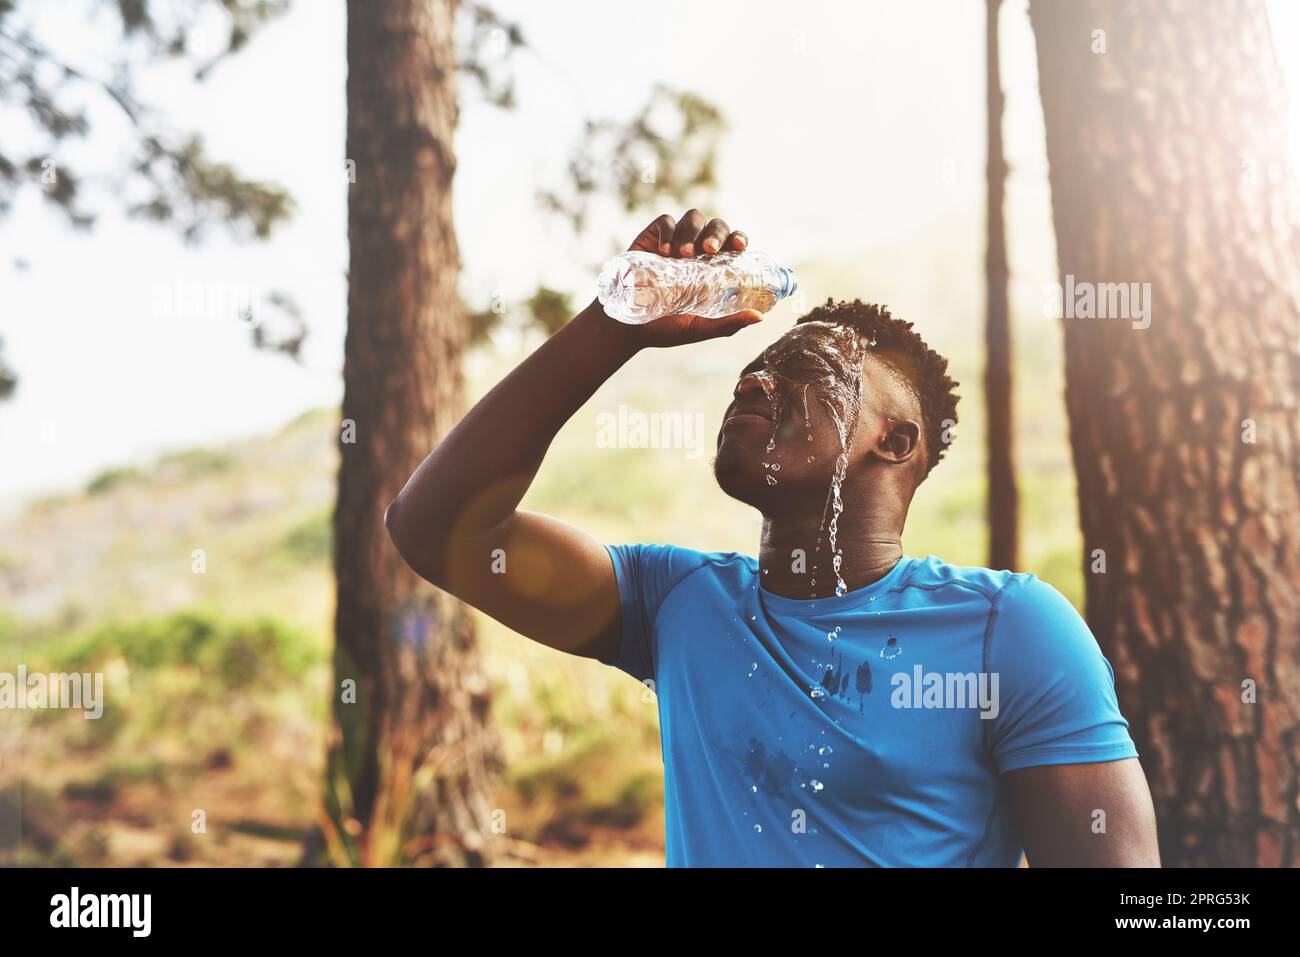 Abkühlung nach einem intensiven Training. Ein sportlicher junger Mann gießt Wasser über sein Gesicht, während er draußen im Wald läuft. Stockfoto